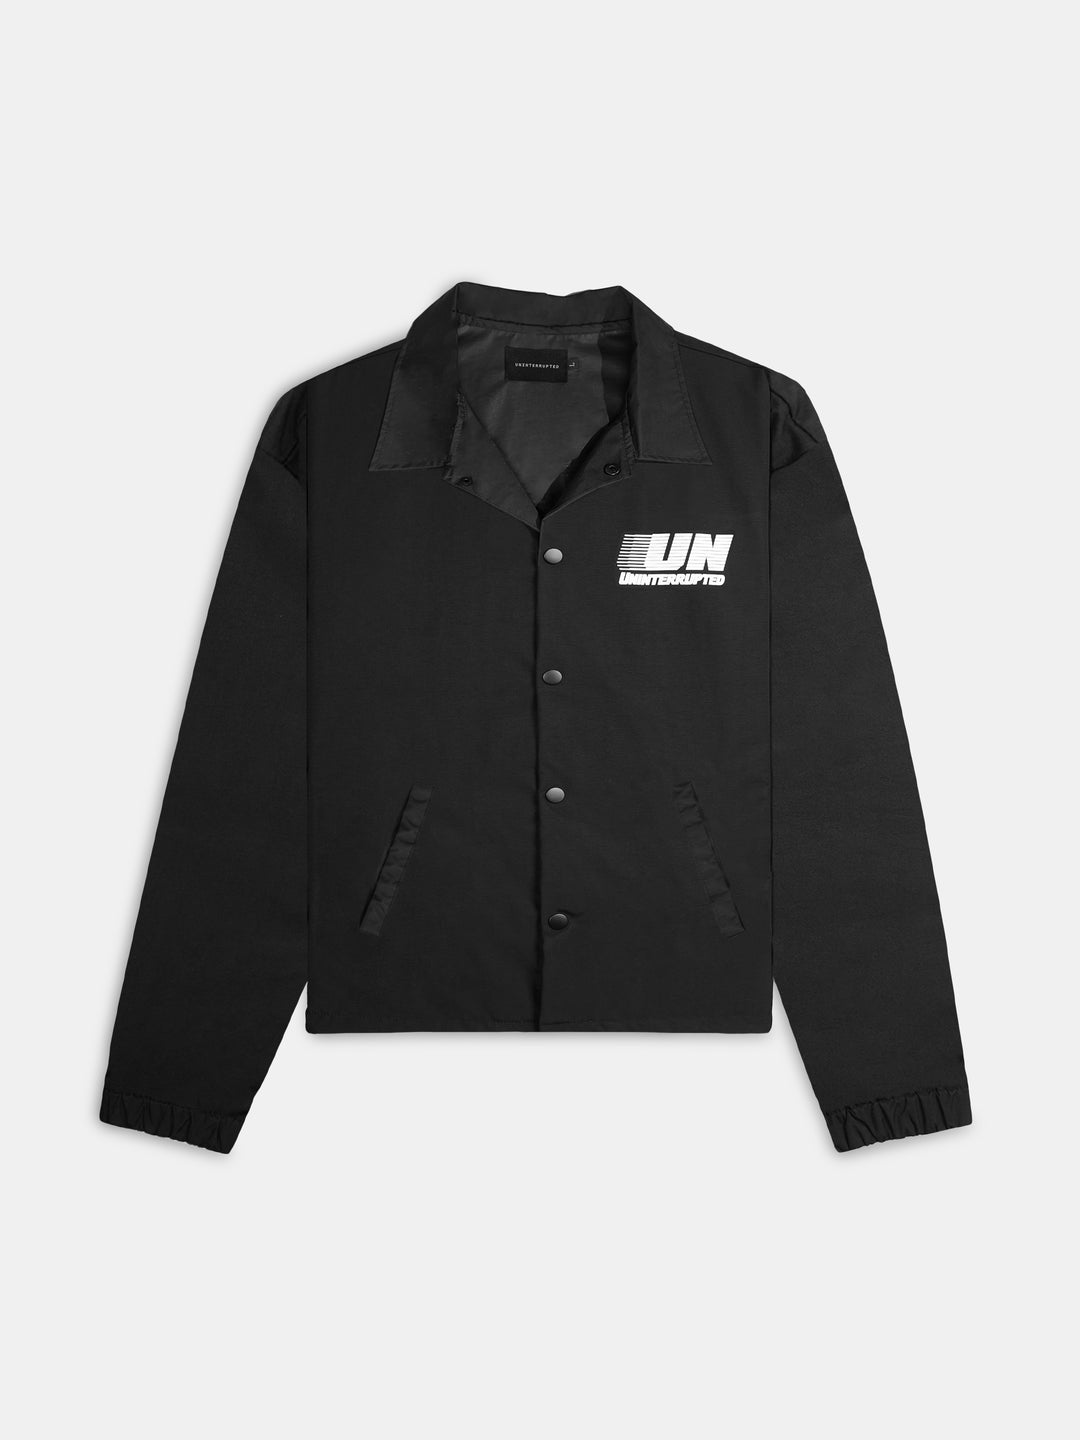 UN Motion Coaches Jacket Black - Front